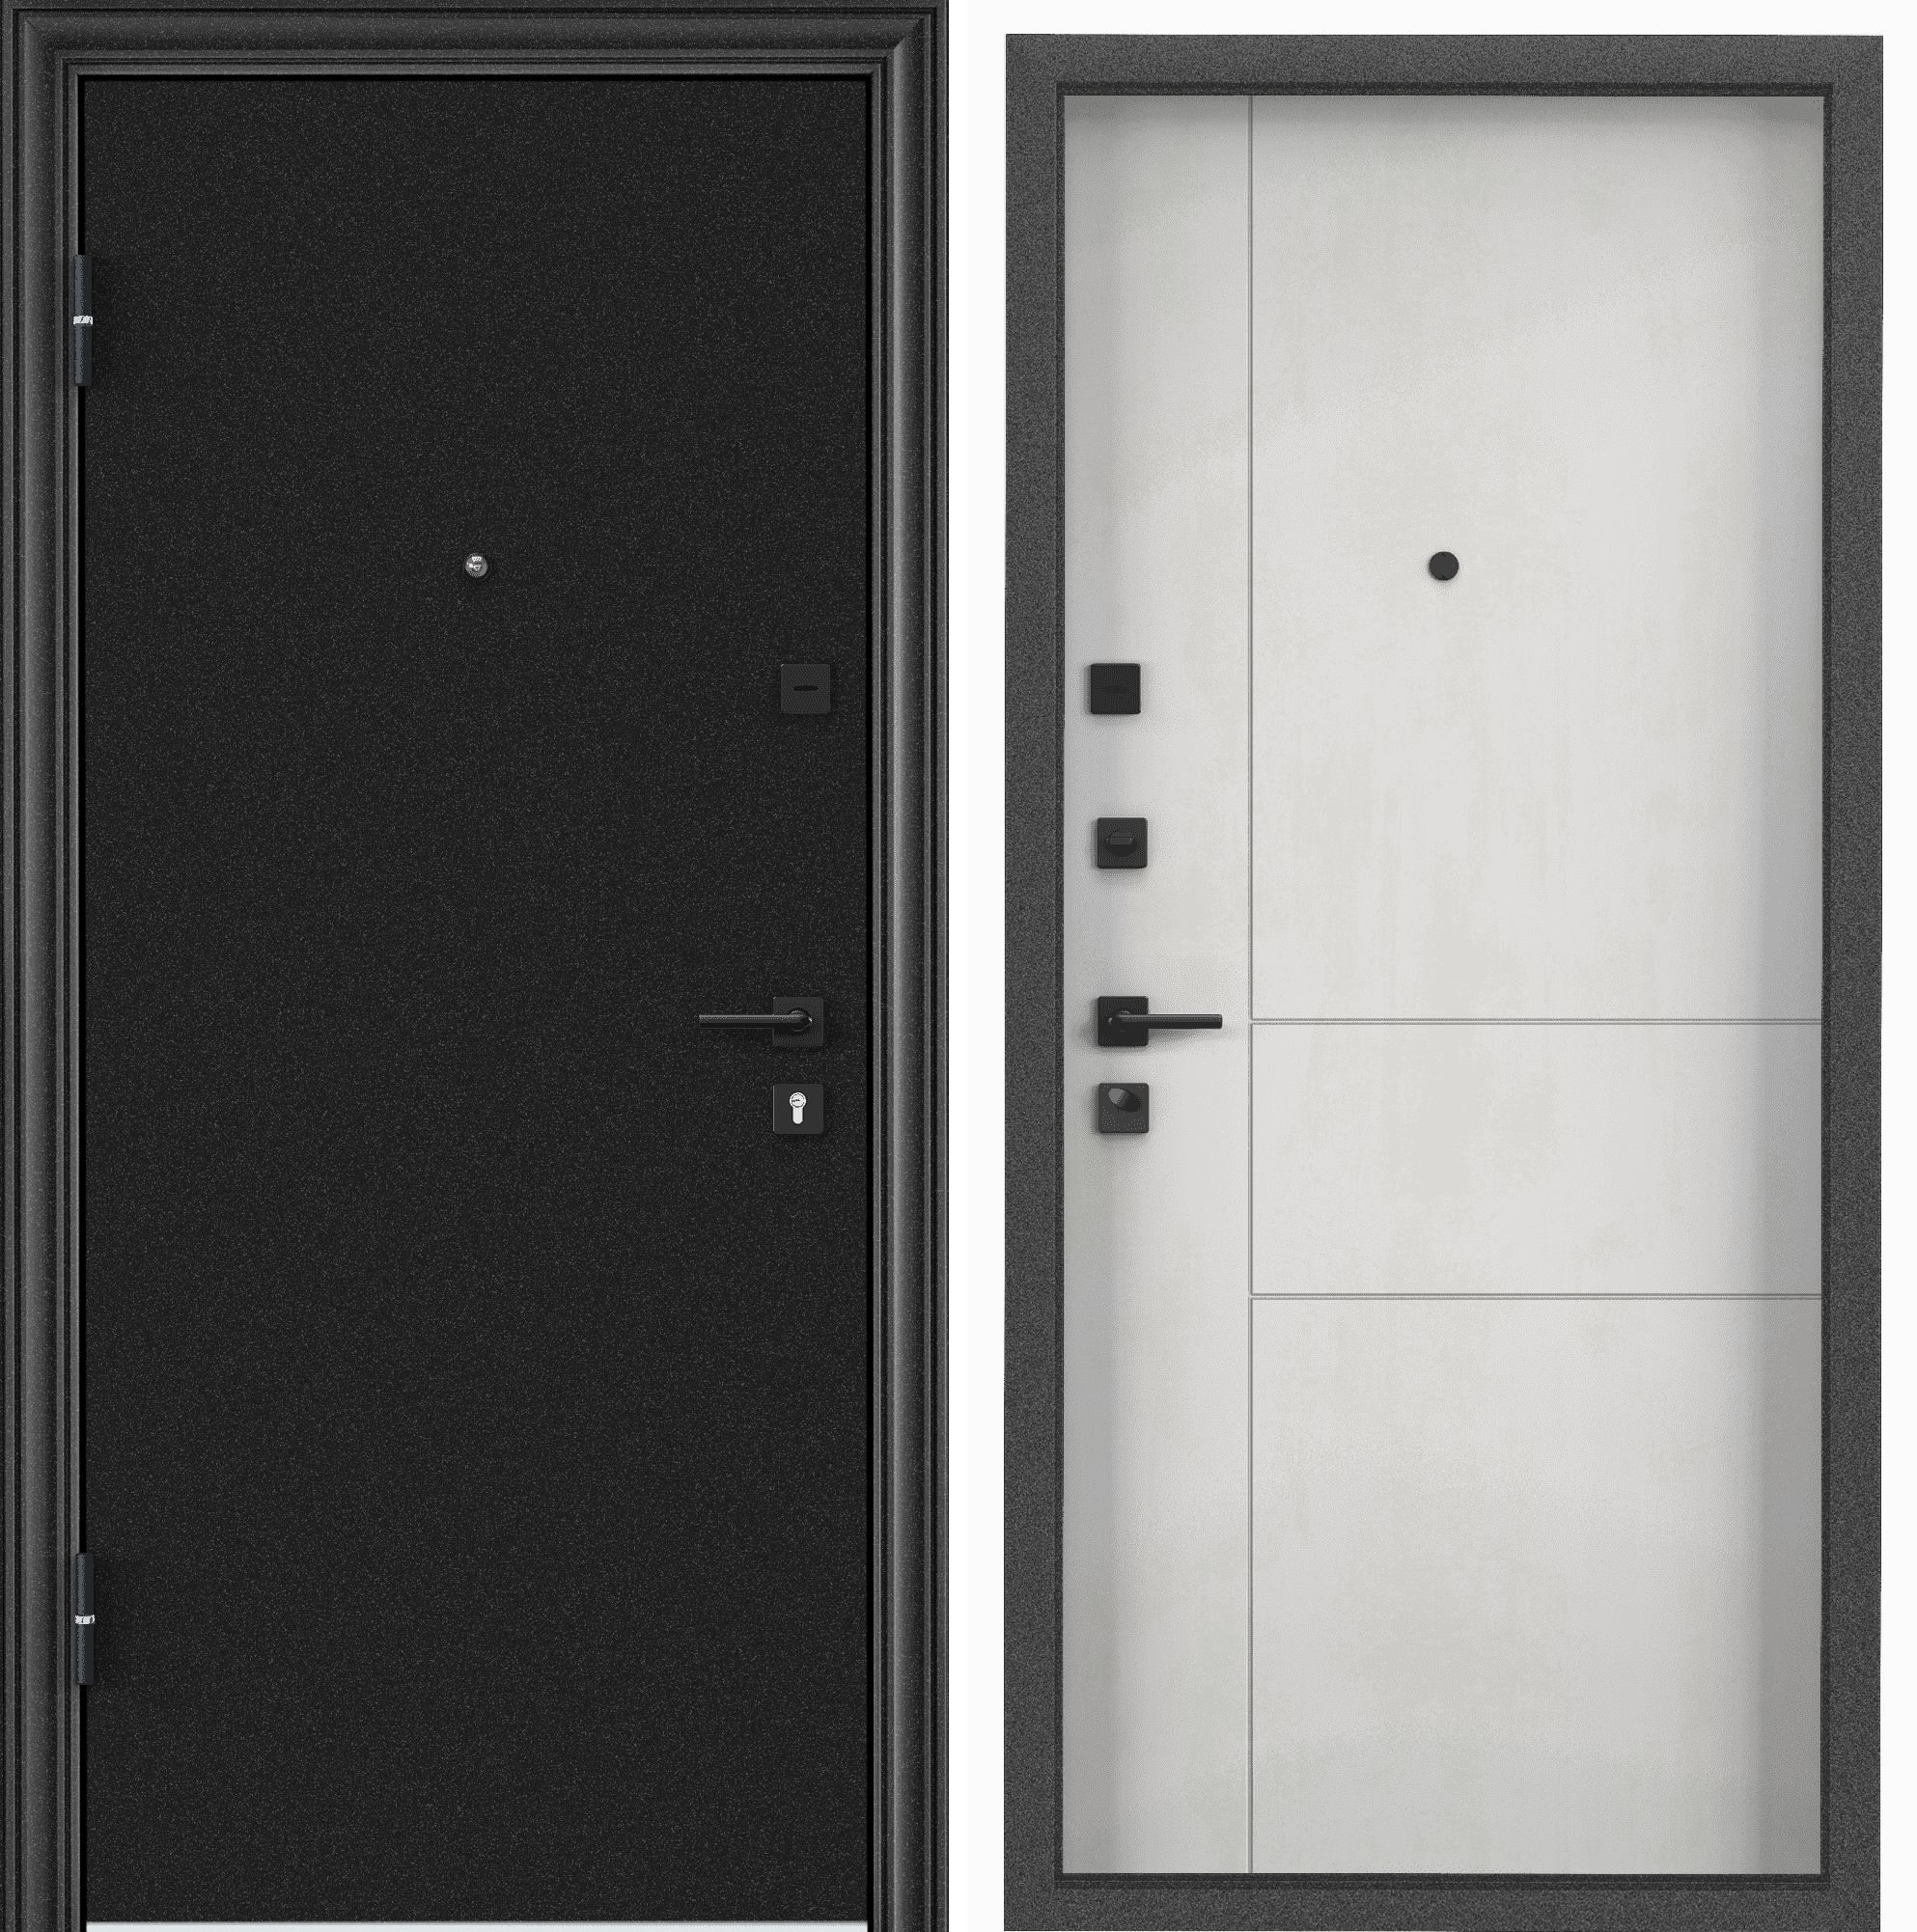 Дверь входная для квартиры металлическая Torex Flat-M 860х2050, левый, темно-серый/бетон дверь входная buldoors ютта левая букле шоколад ларче бьянко с зеркалом 860х2050 мм